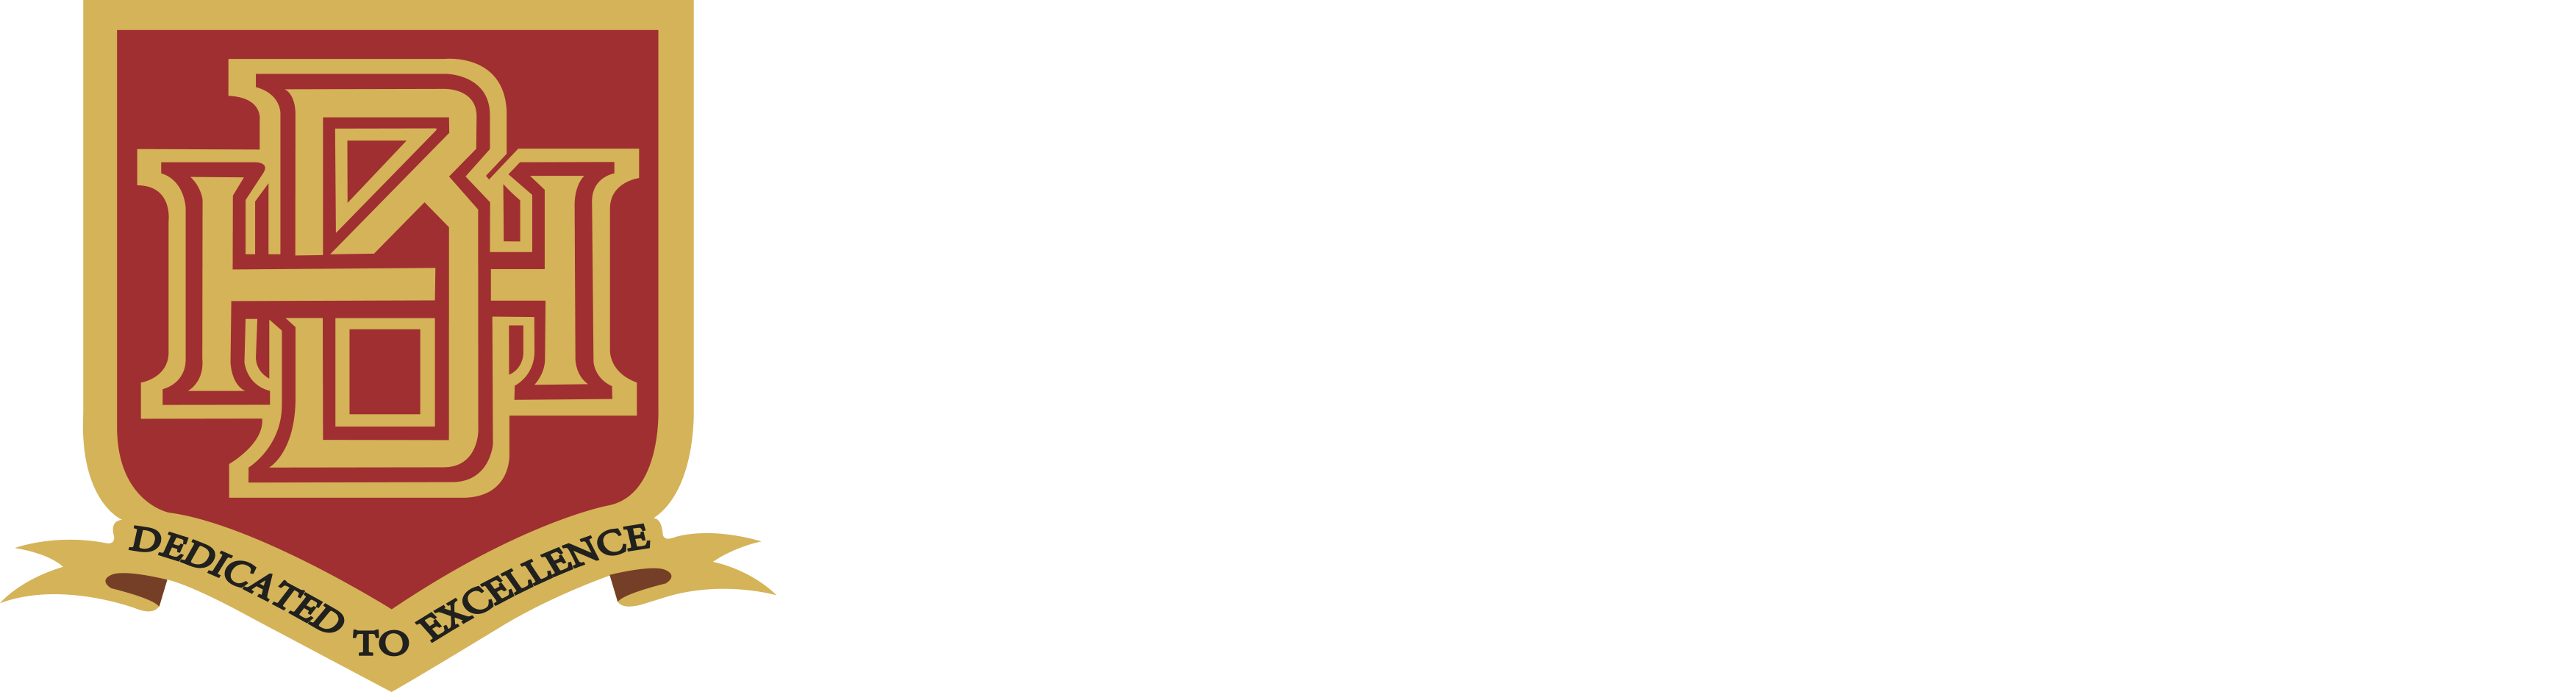 brookhurst-logo-white